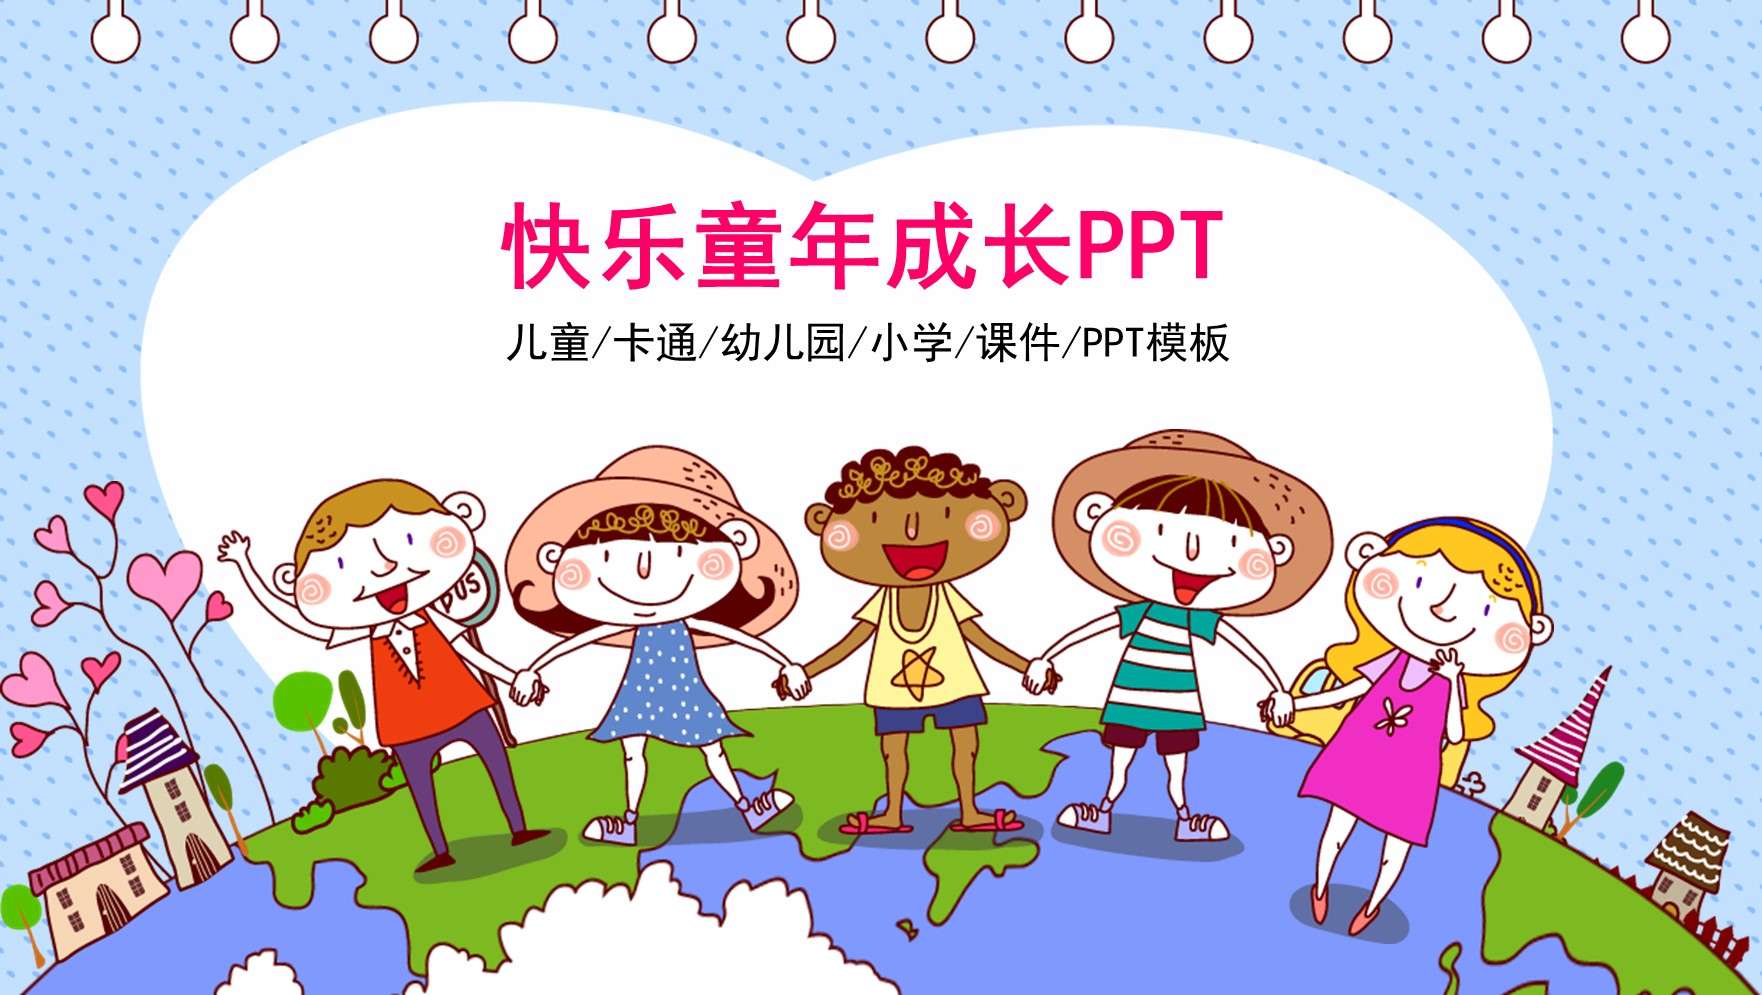 Children's innocence flying children's education PPT template